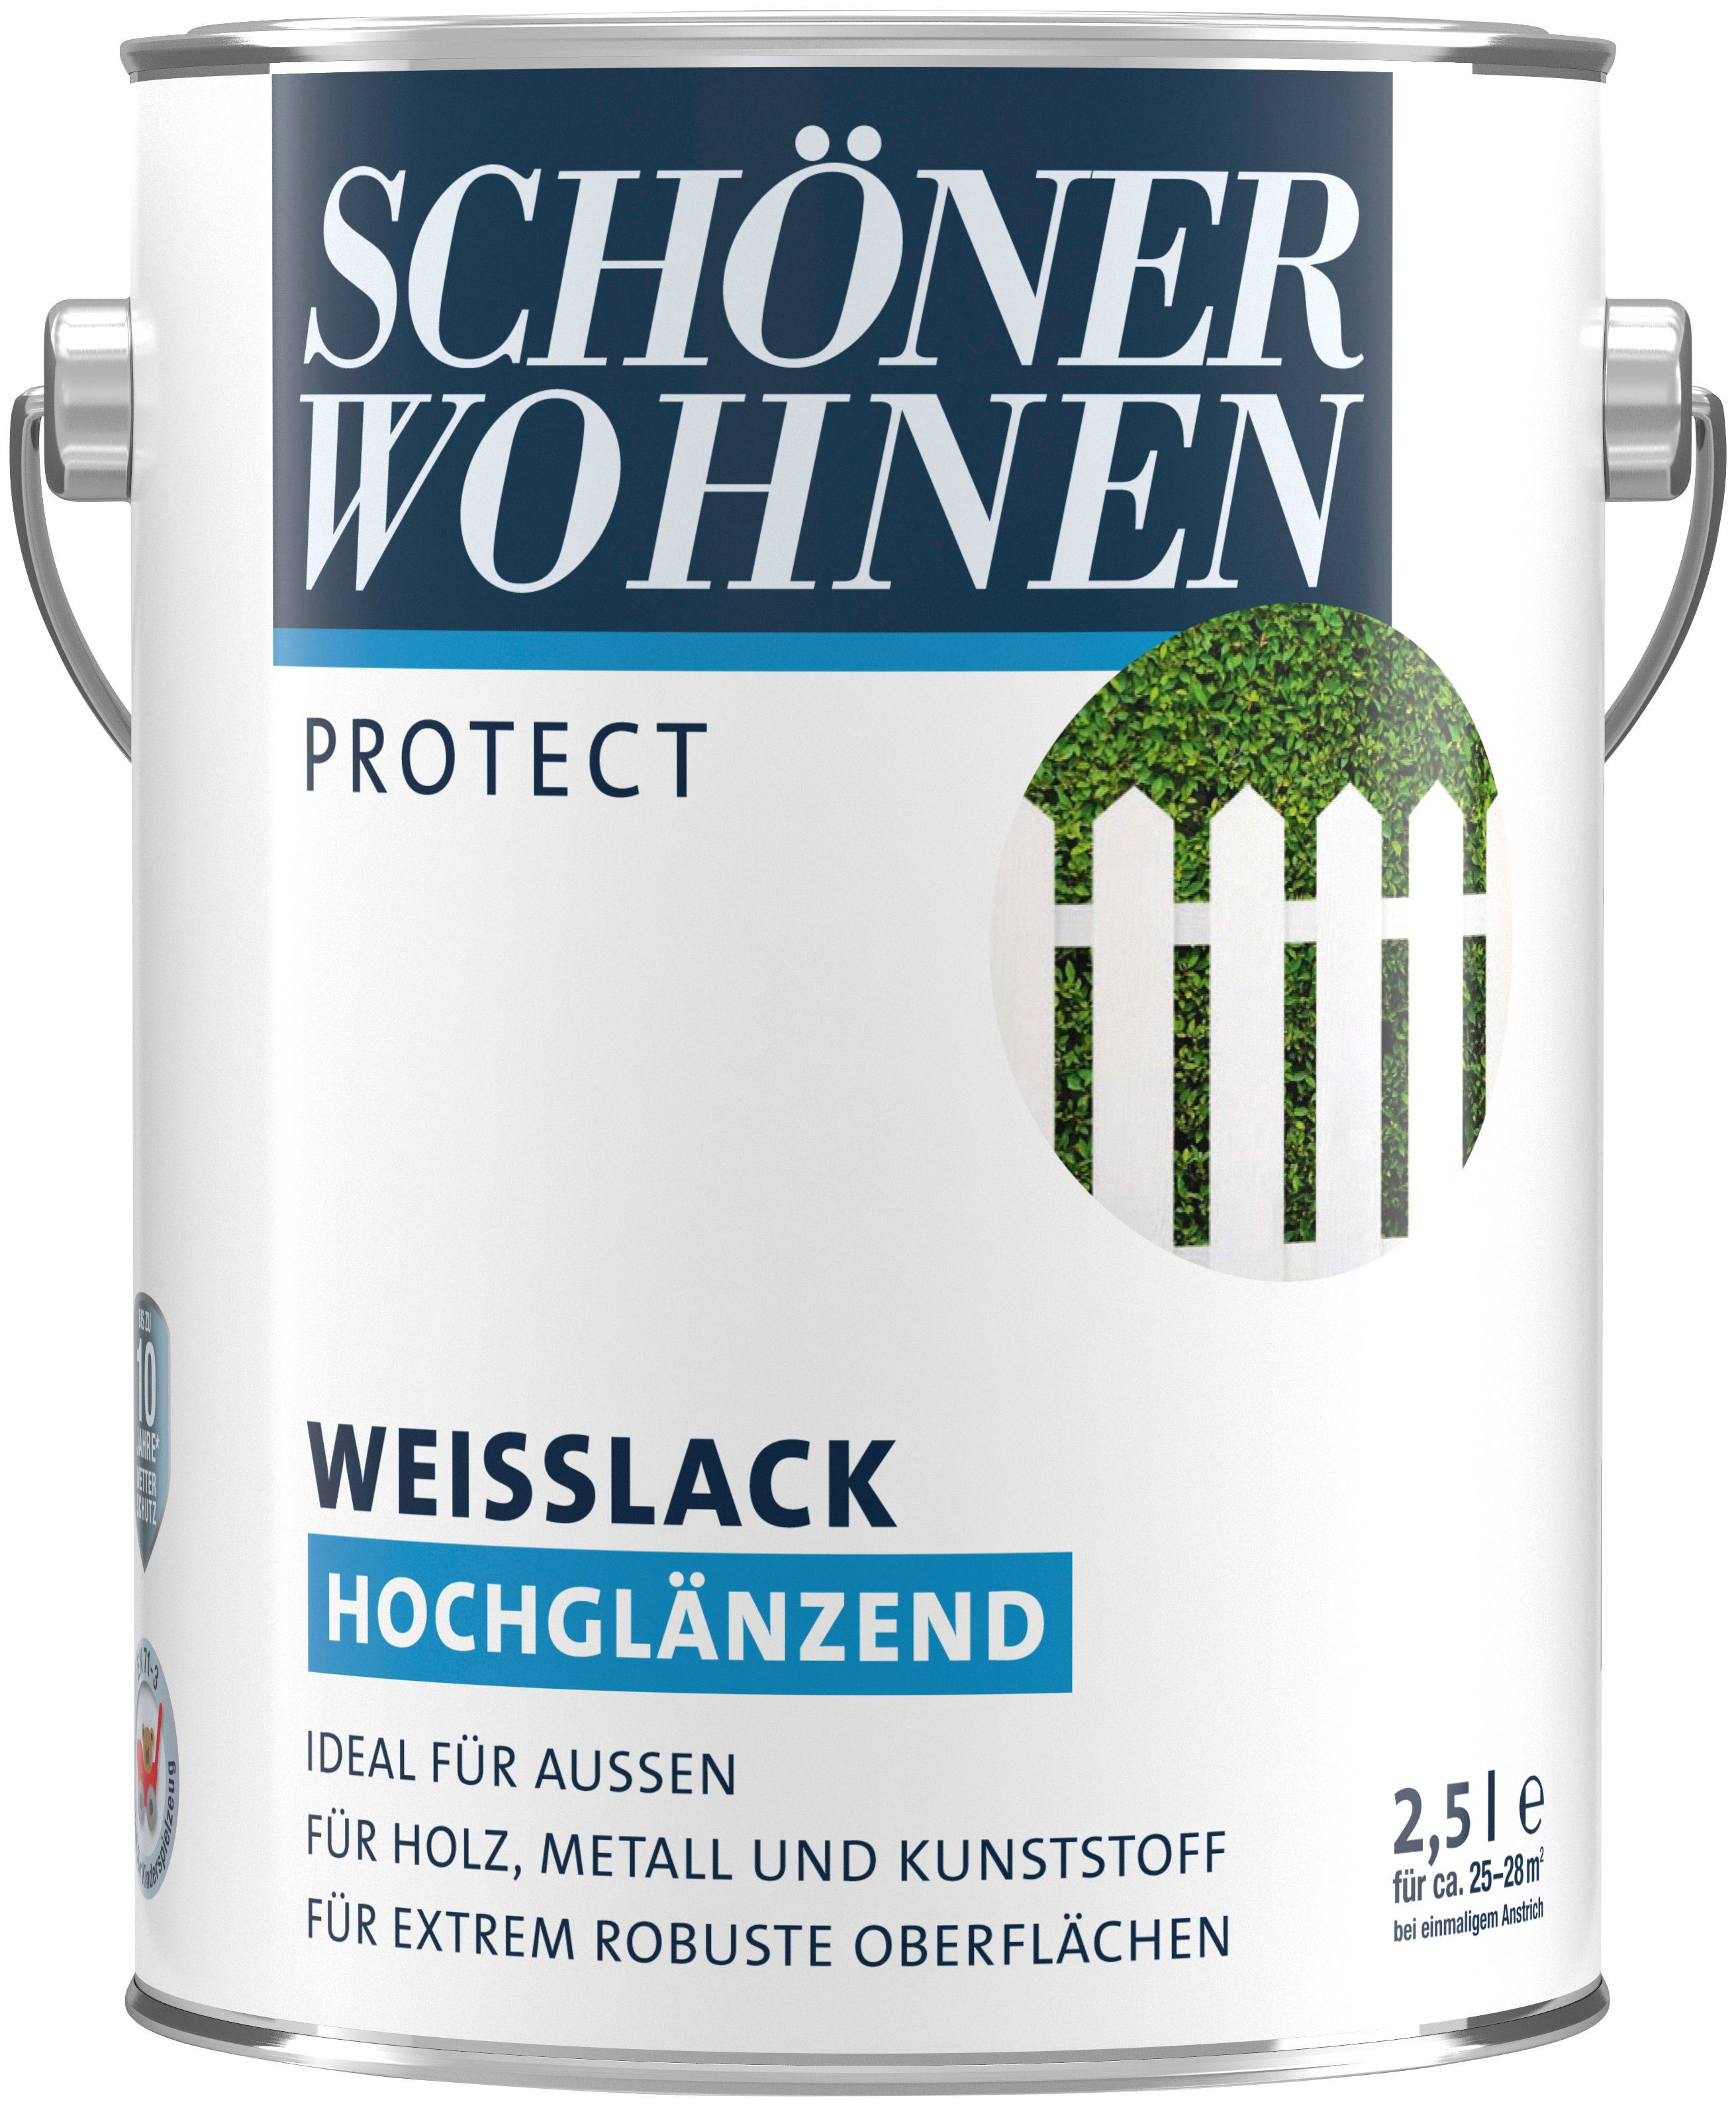 2,5 Weißlack FARBE WOHNEN SCHÖNER weiß, ideal für außen, Liter, Protect, hochglänzend